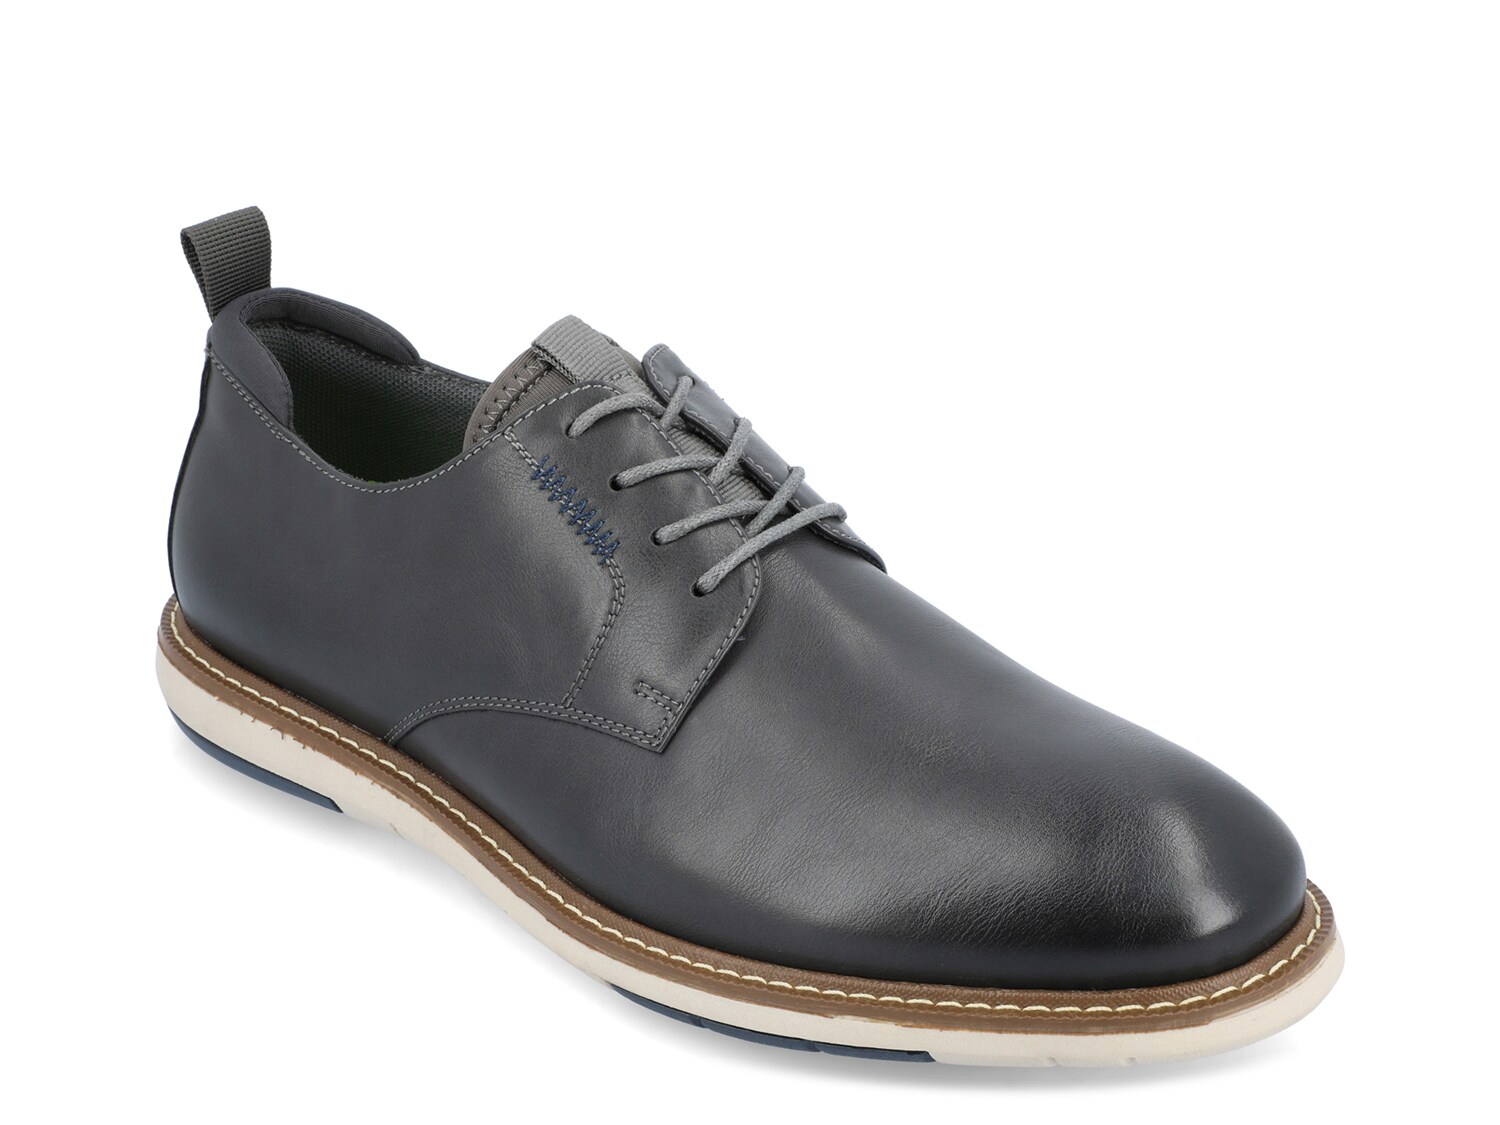 Оксфорды Vance Co Thad, серый мужские классические туфли свадебные оксфорды деловые туфли на шнуровке для офиса лето